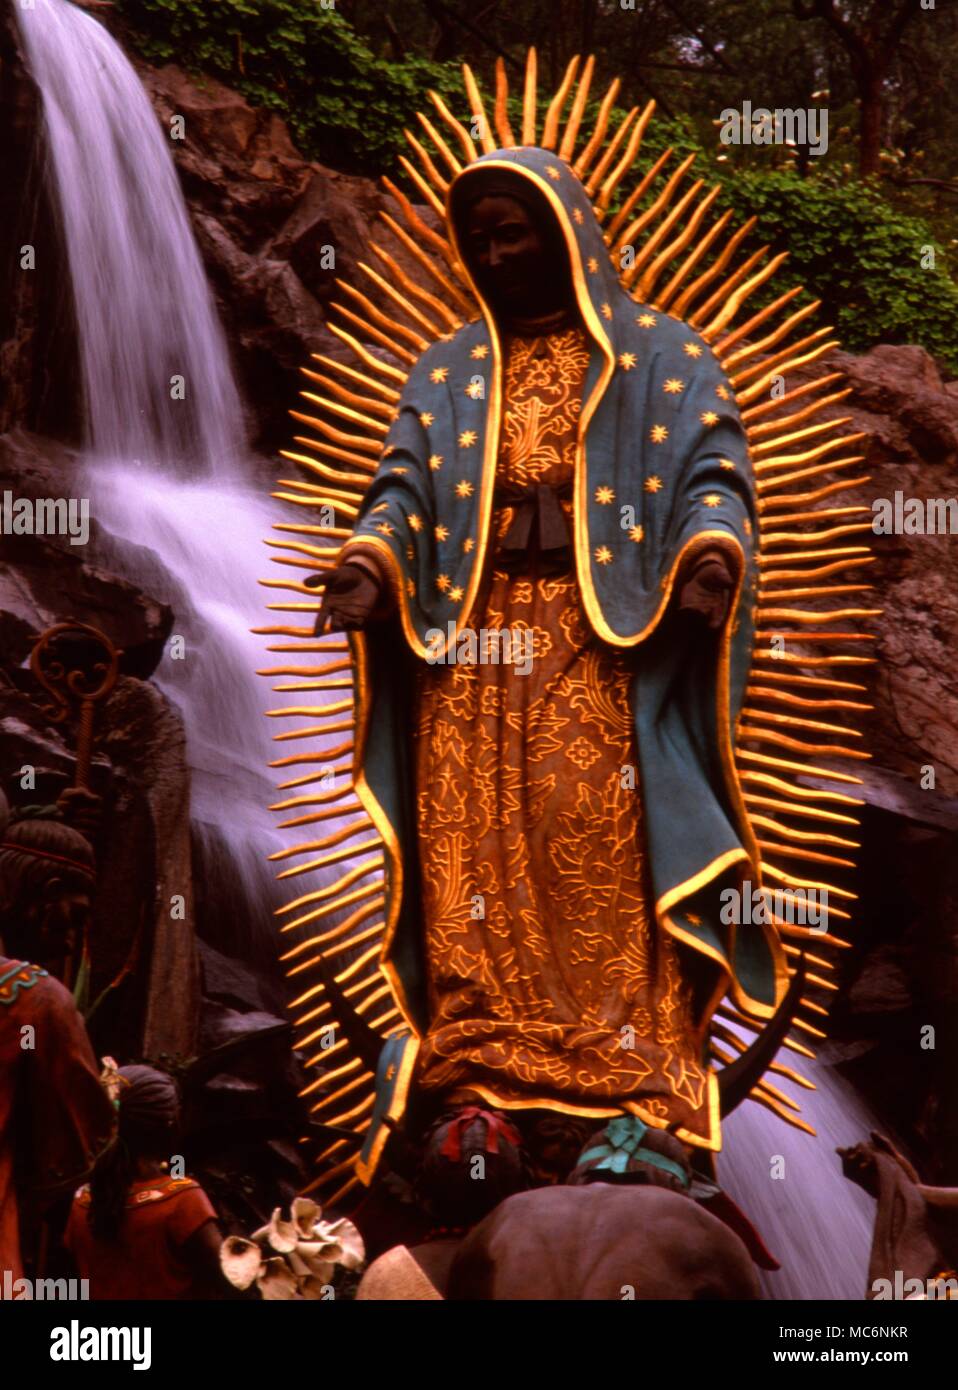 Jungfrau von Guadalupe, strahlend angezeigt s tatue, worhsipped von Indianern, in der Villa Guadalupe, Mexiko Stadt. Die Jungfrau wird gesagt, um Juan Diego erschien in 1531 mindestens vier Mal. Teh Gesang der Mananitas ist am 12. Dezember statt. Stockfoto